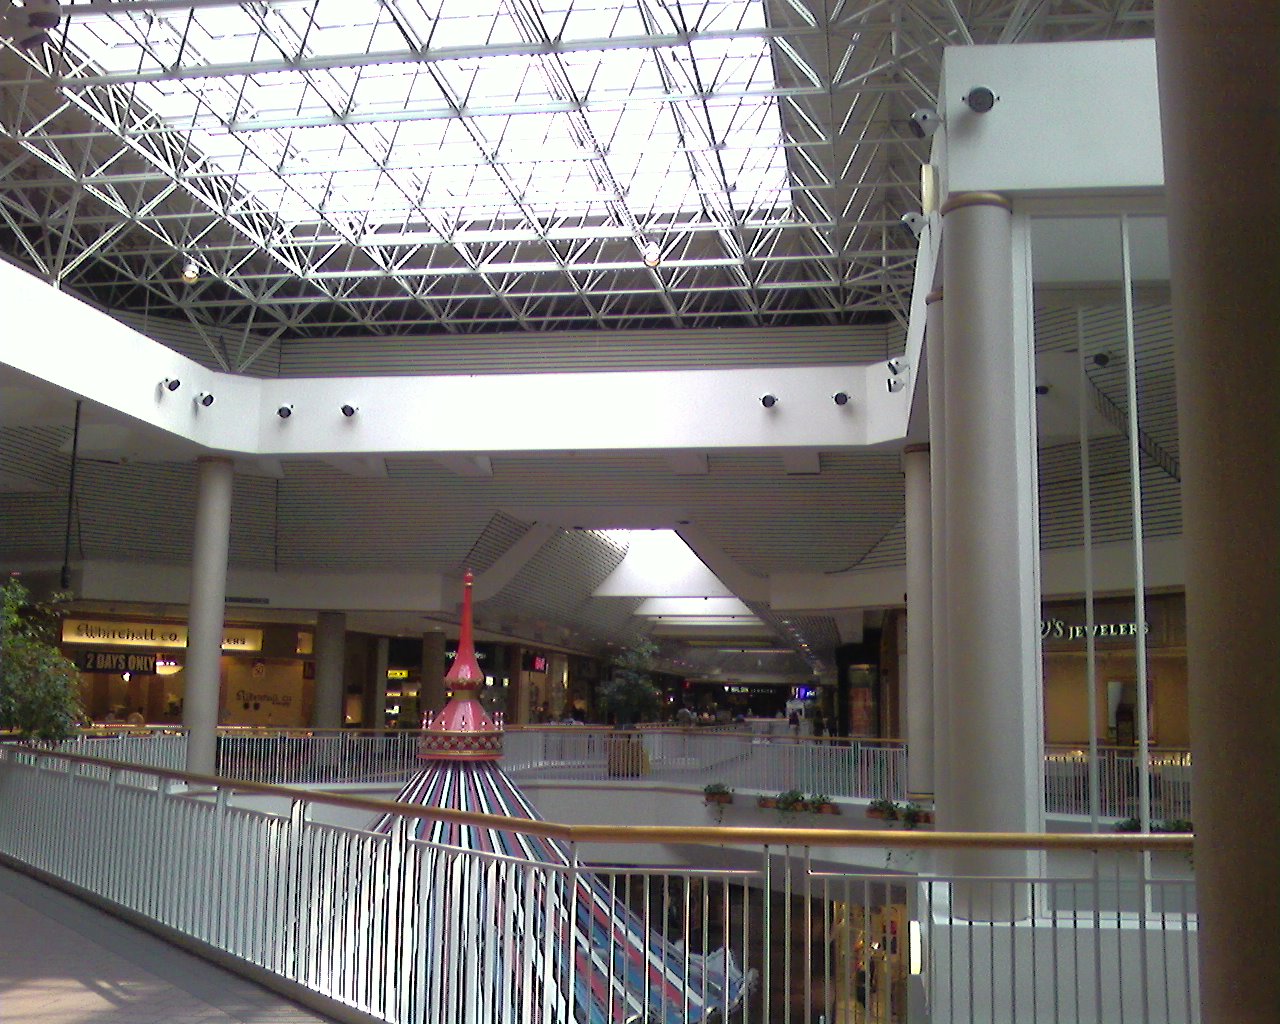 Springfield Mall in Springfield, Virginia